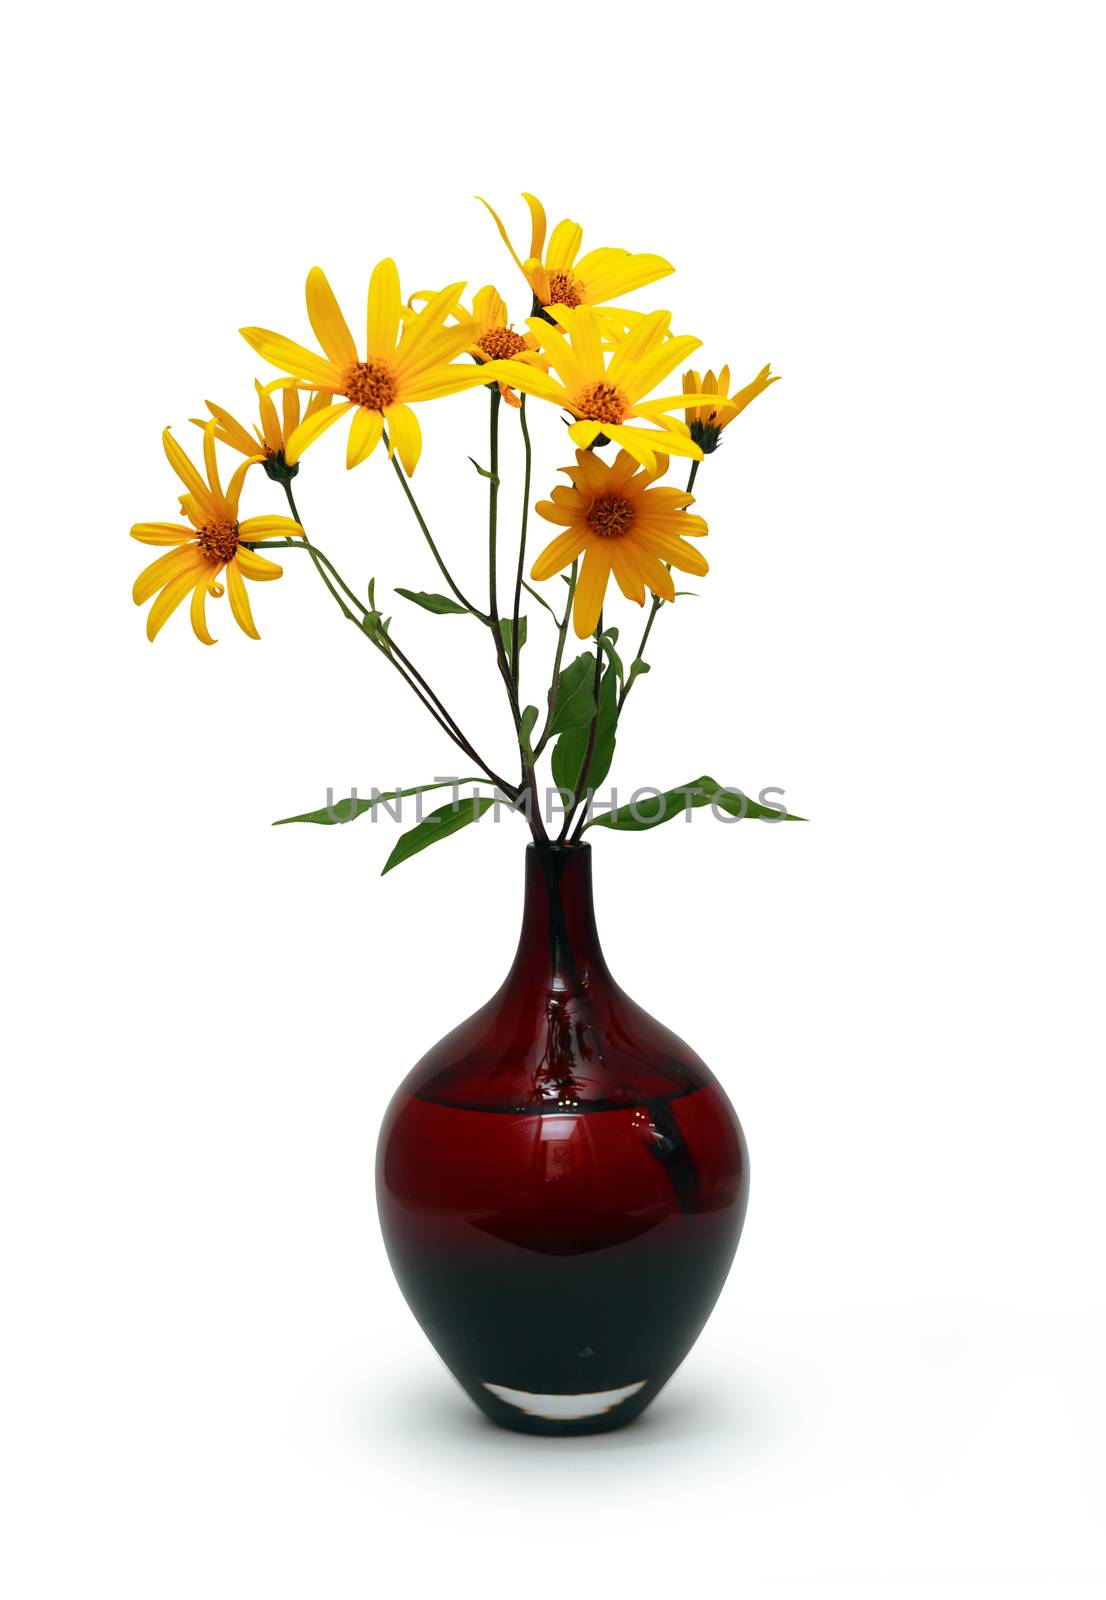 Flowers In Vase by kvkirillov